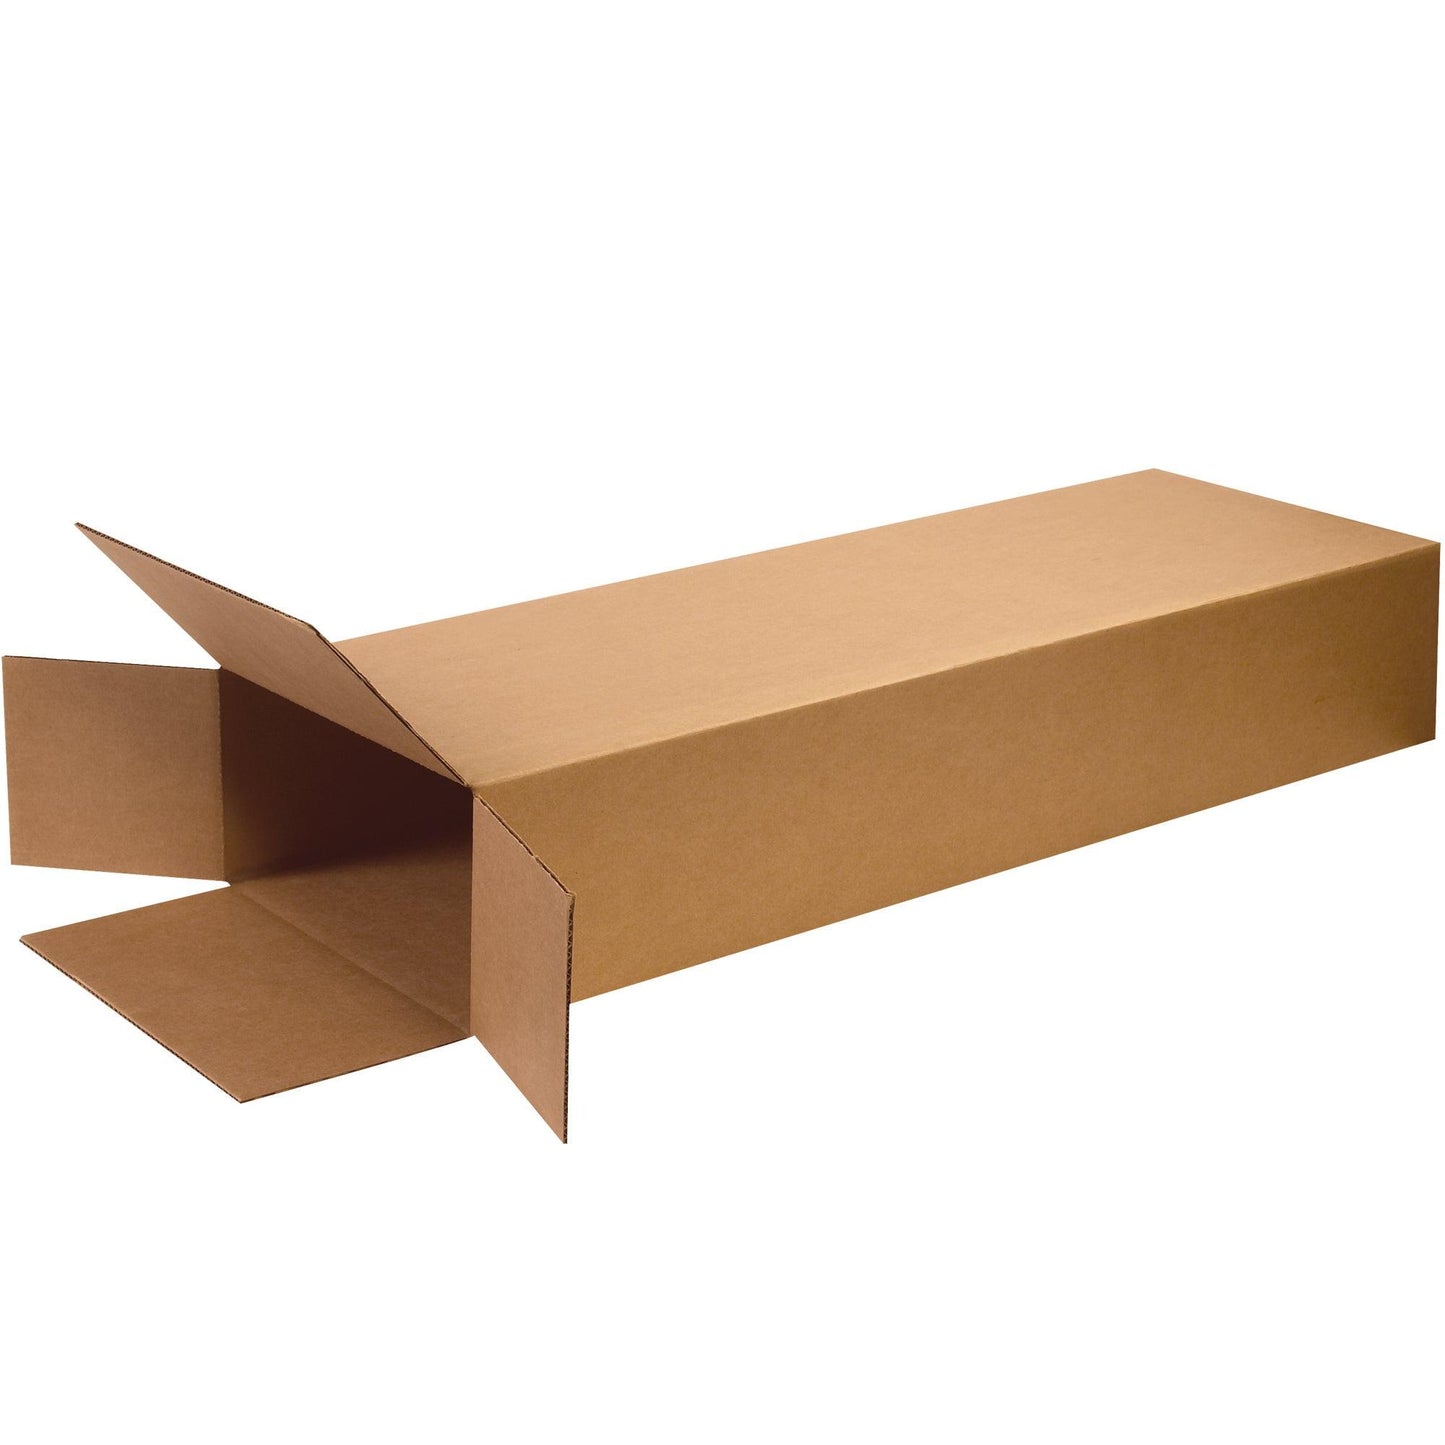 18 x 6 x 45" Side Loading Boxes - HD18645FOL